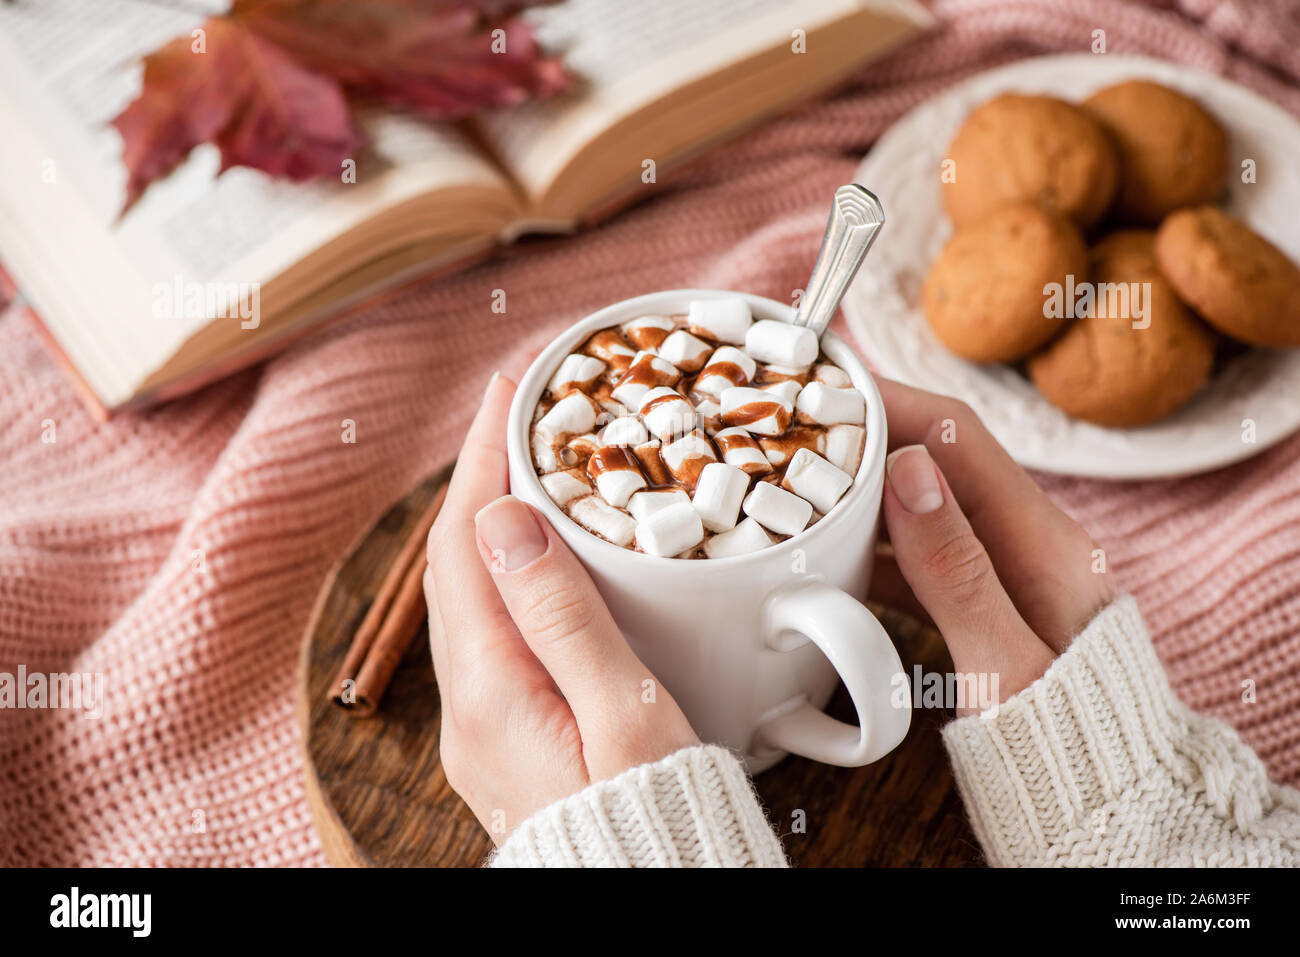 Cioccolata calda con marshmallows in mani femminili. Bevanda calda accogliente comfort food per autunno e inverno stagione di vacanze Foto Stock